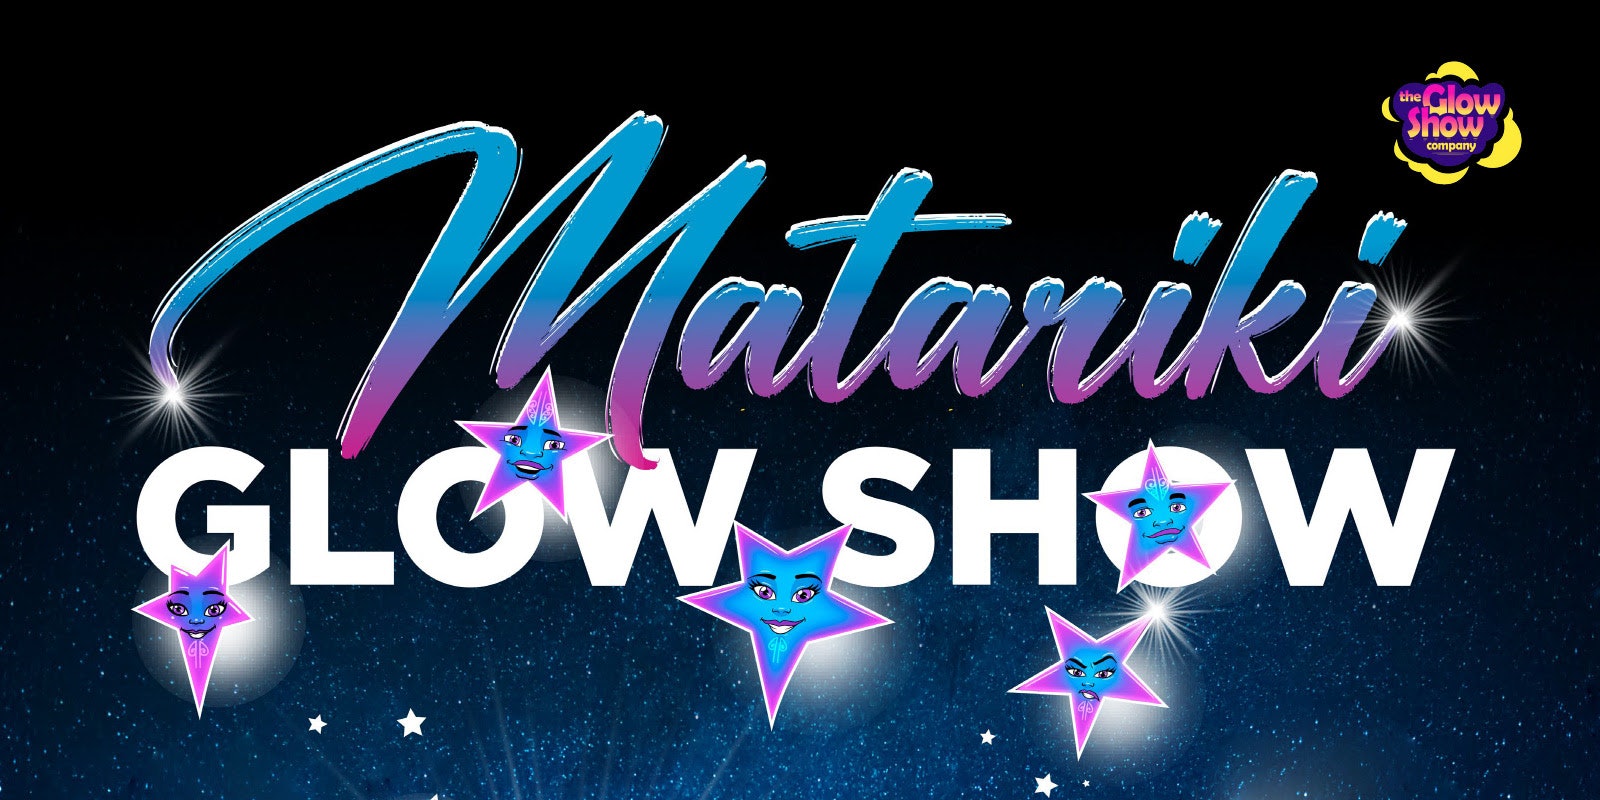 Matariki Glow Show